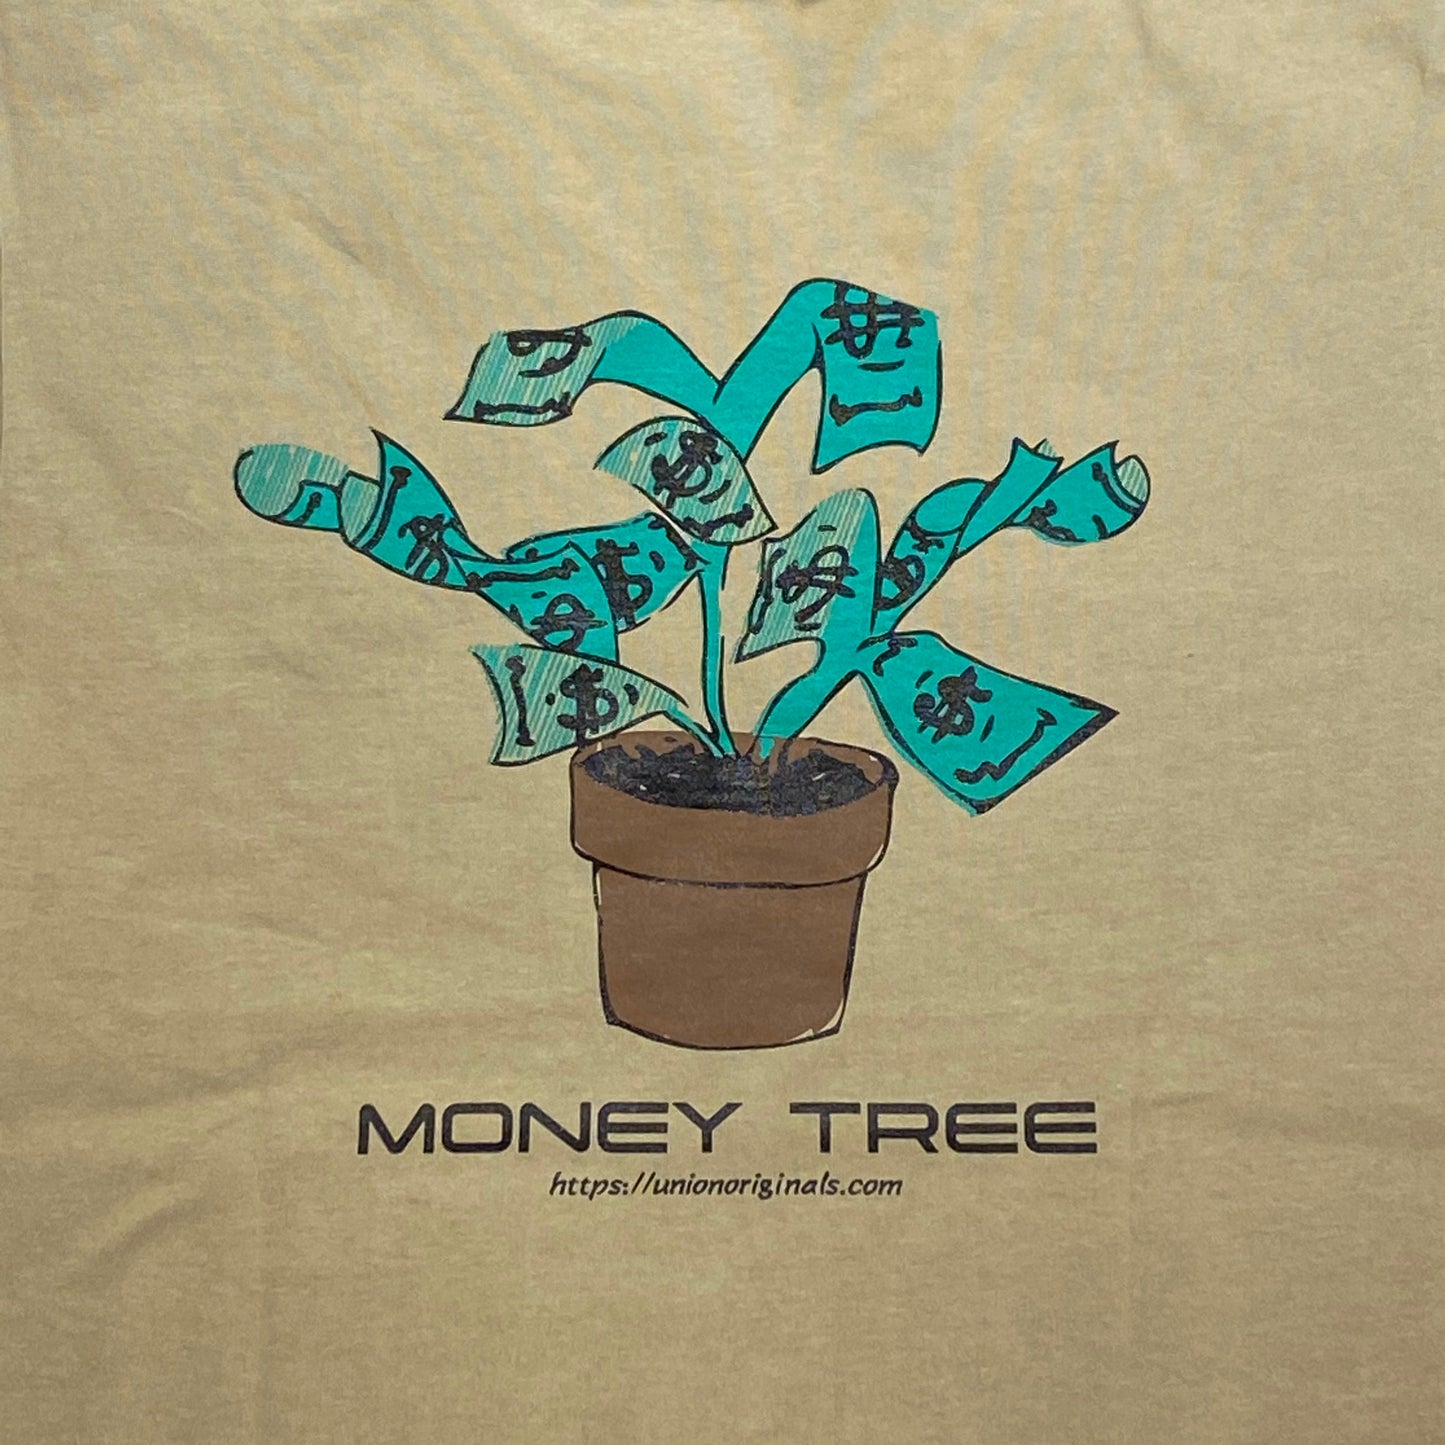 【UNION originals- ユニオンオリジナルス】Money Tree T-Shirt / Khaki(マネーツリーTシャツ/カーキ)